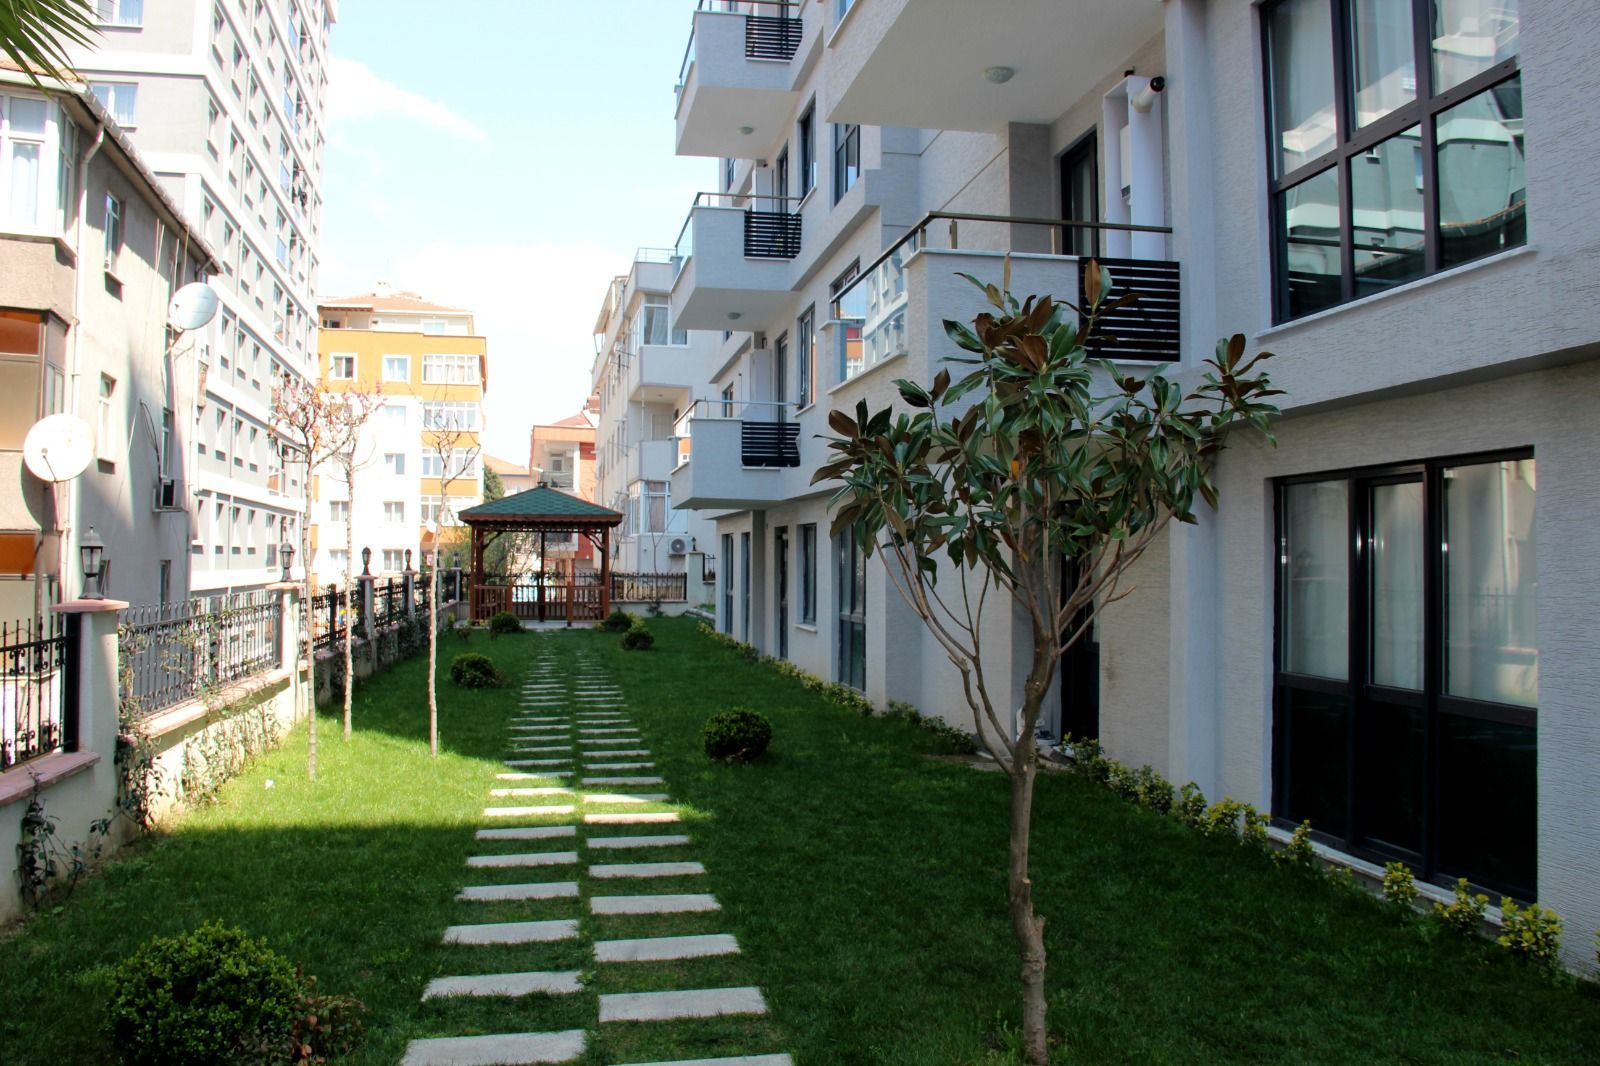 Готовые апартаменты в жилом районе Стамбула Кючюкчекмедже